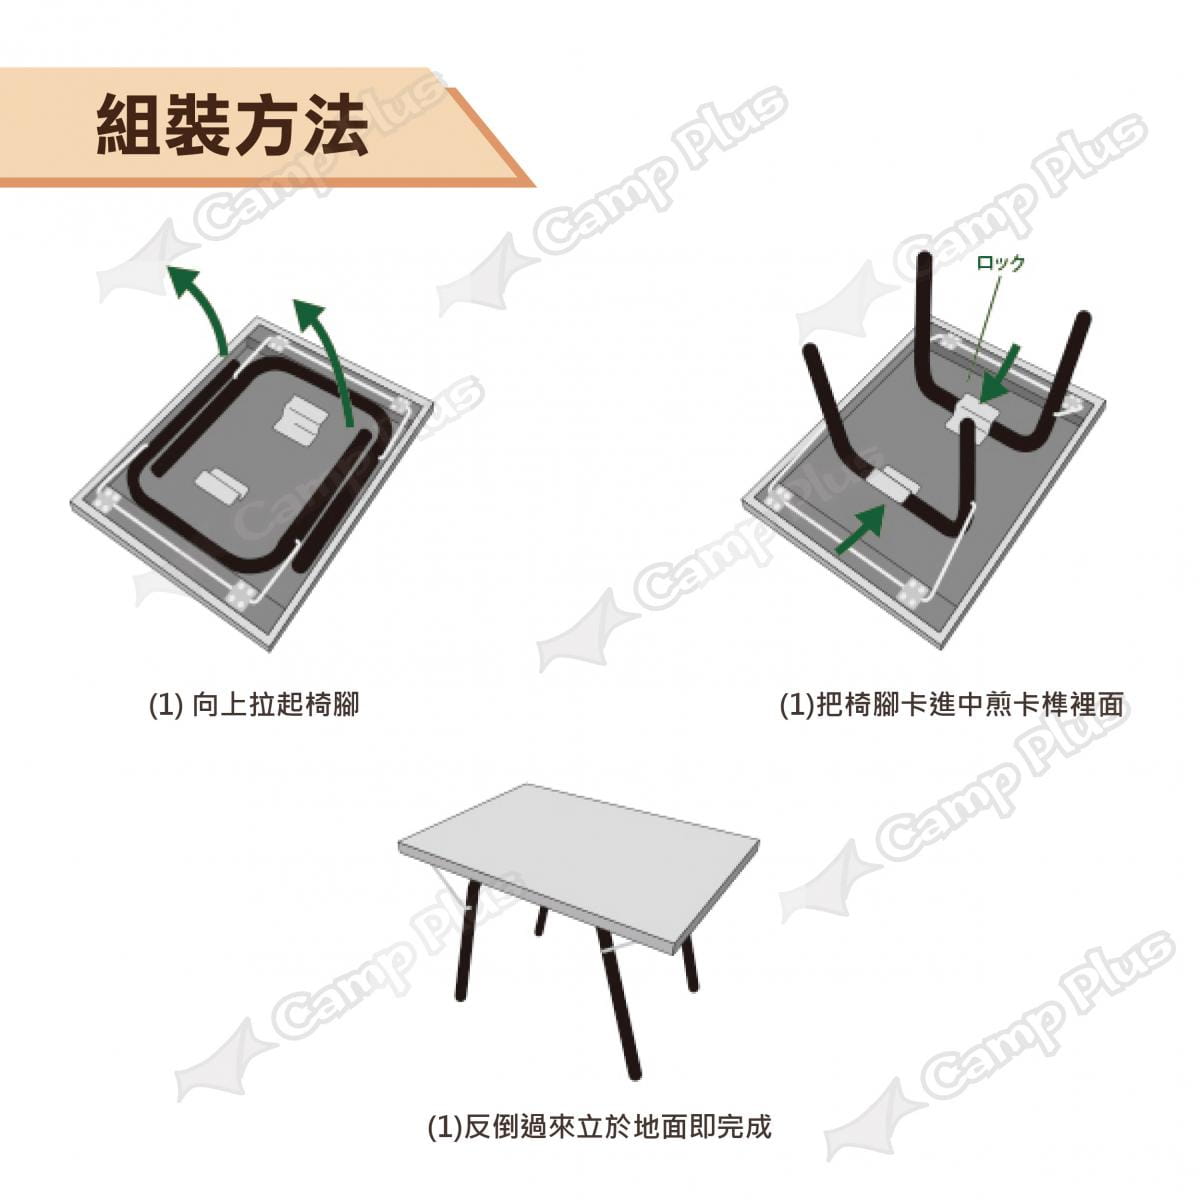 【日本LOGOS】防火不鏽鋼桌 LG73173158 (悠遊戶外) 5